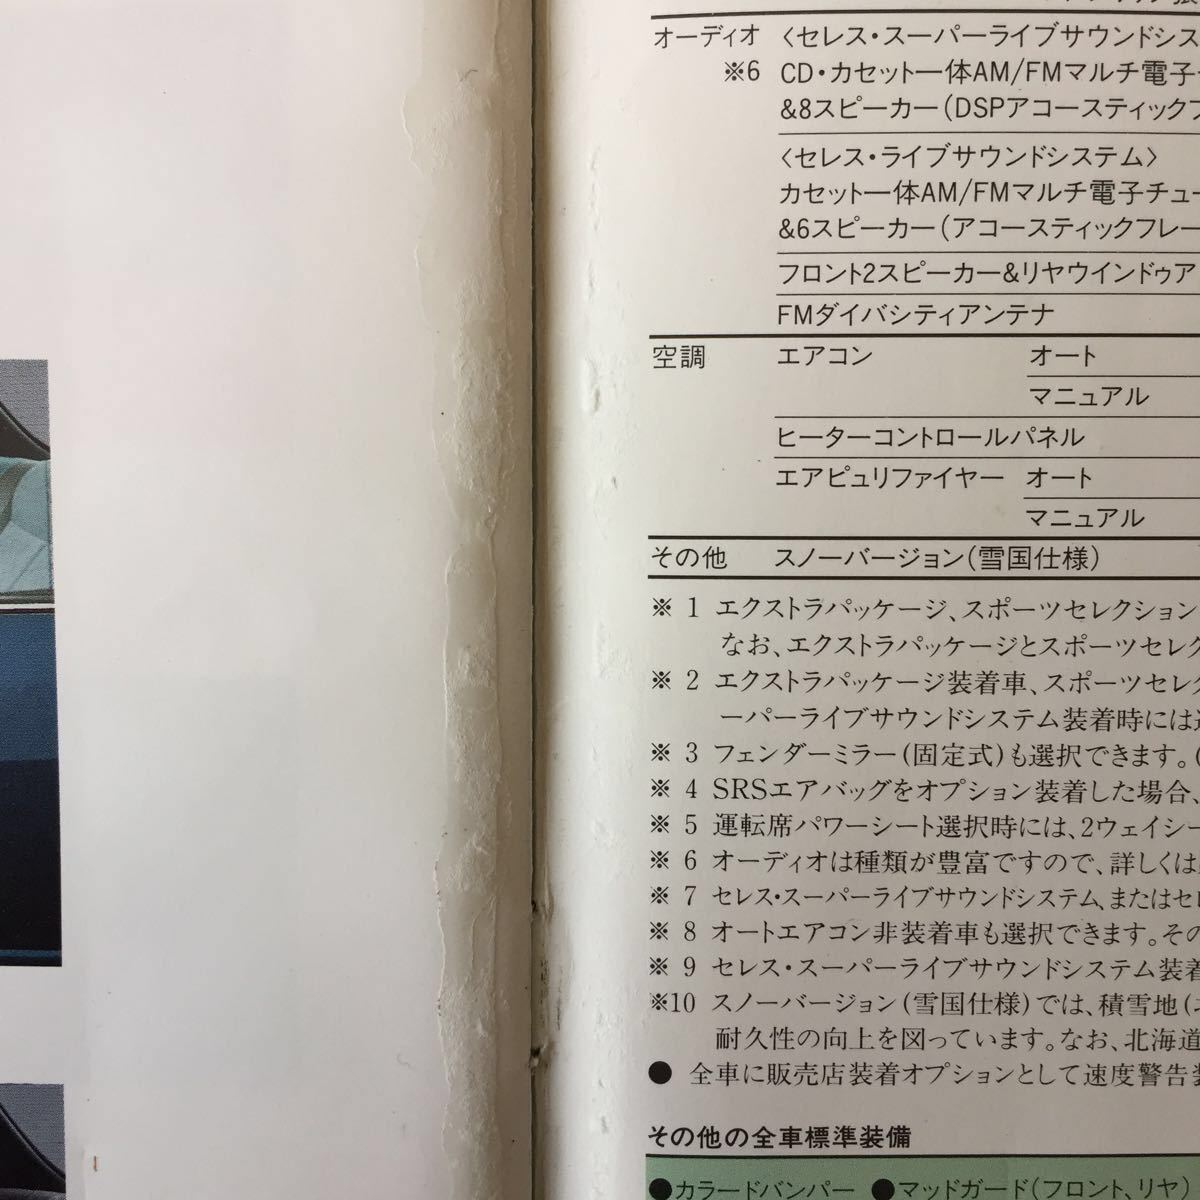  Toyota Corolla Ceres каталог 1992 год 5 месяц 